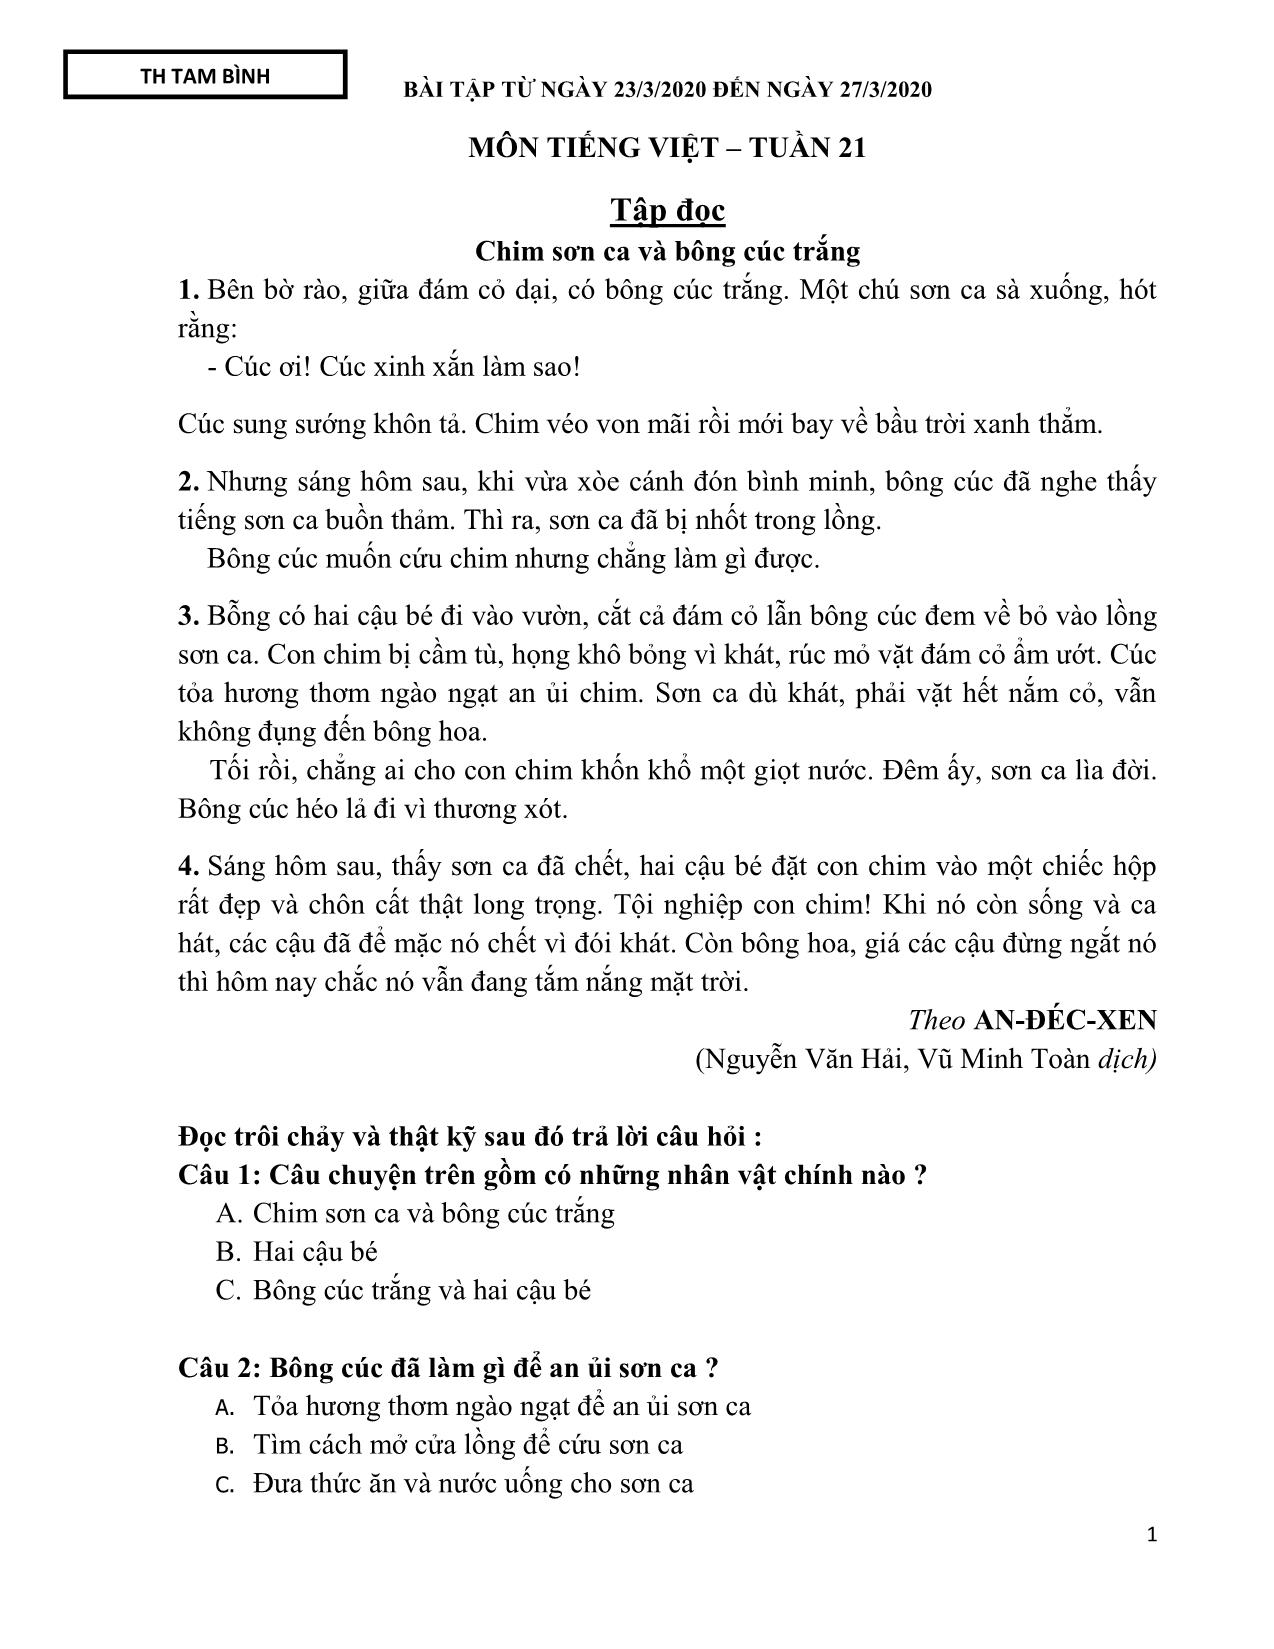 Đề cương ôn tập môn Tiếng Việt – Tuần 21: Tập đọc chim sơn ca và bông cúc trắng trang 1